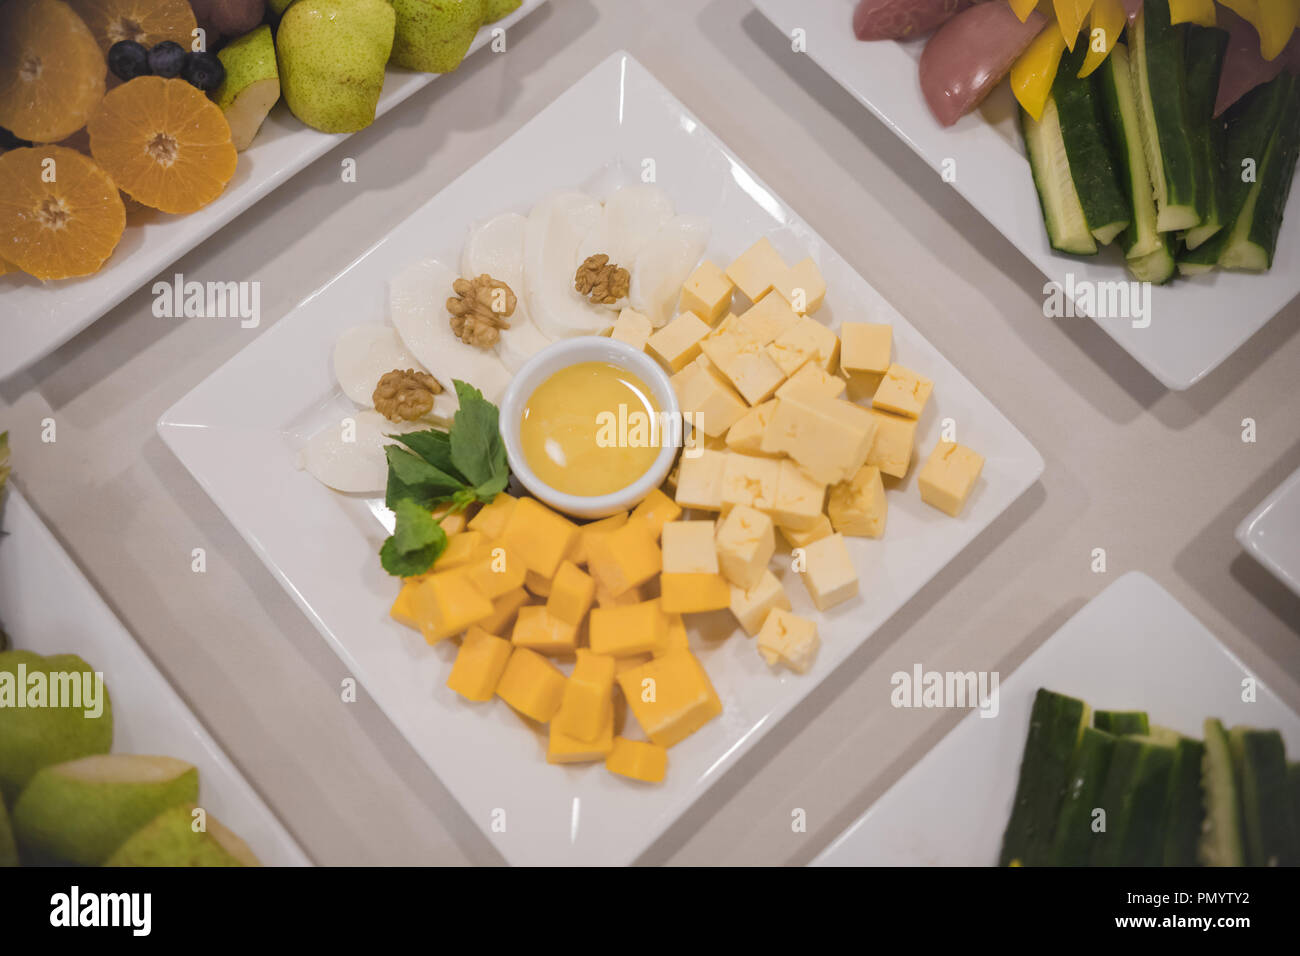 Käse snack Würfel stehen auf einer Tabelle in eine quadratische Platte  zusammen mit anderen Gerichten Stockfotografie - Alamy